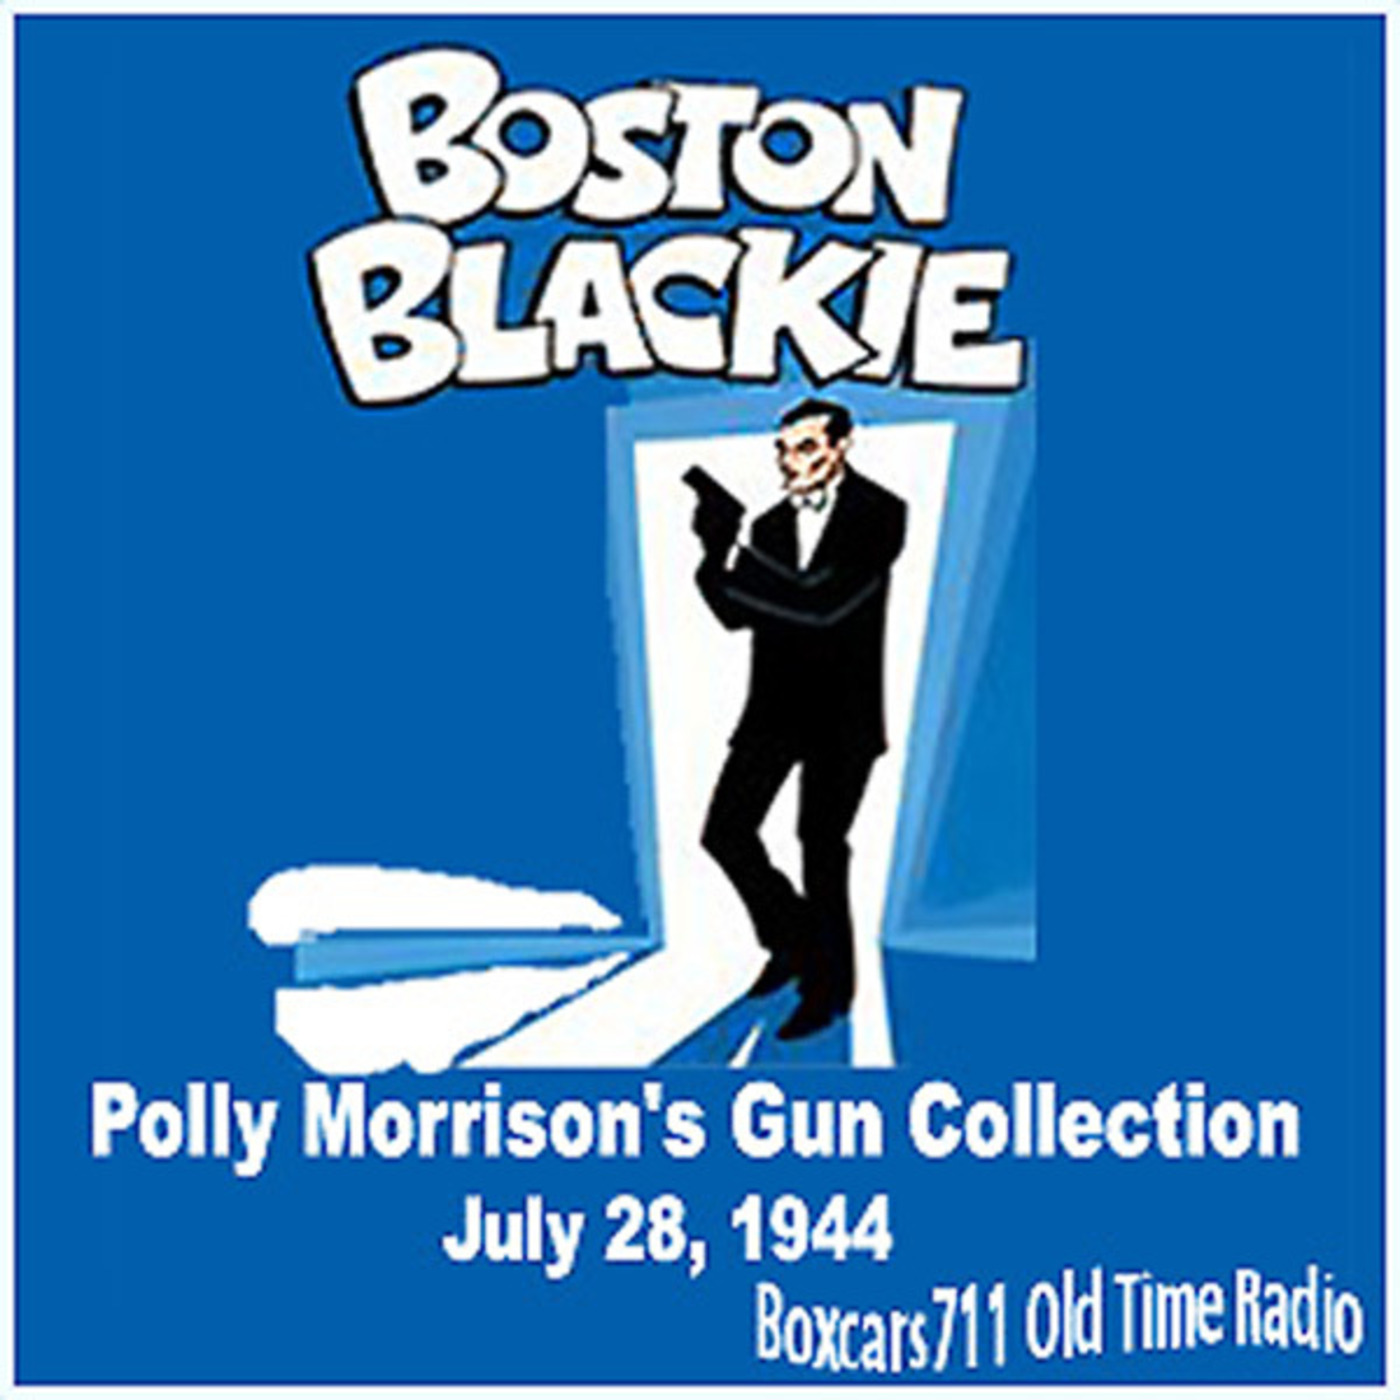 Episode 9714: Boston Blackie - 